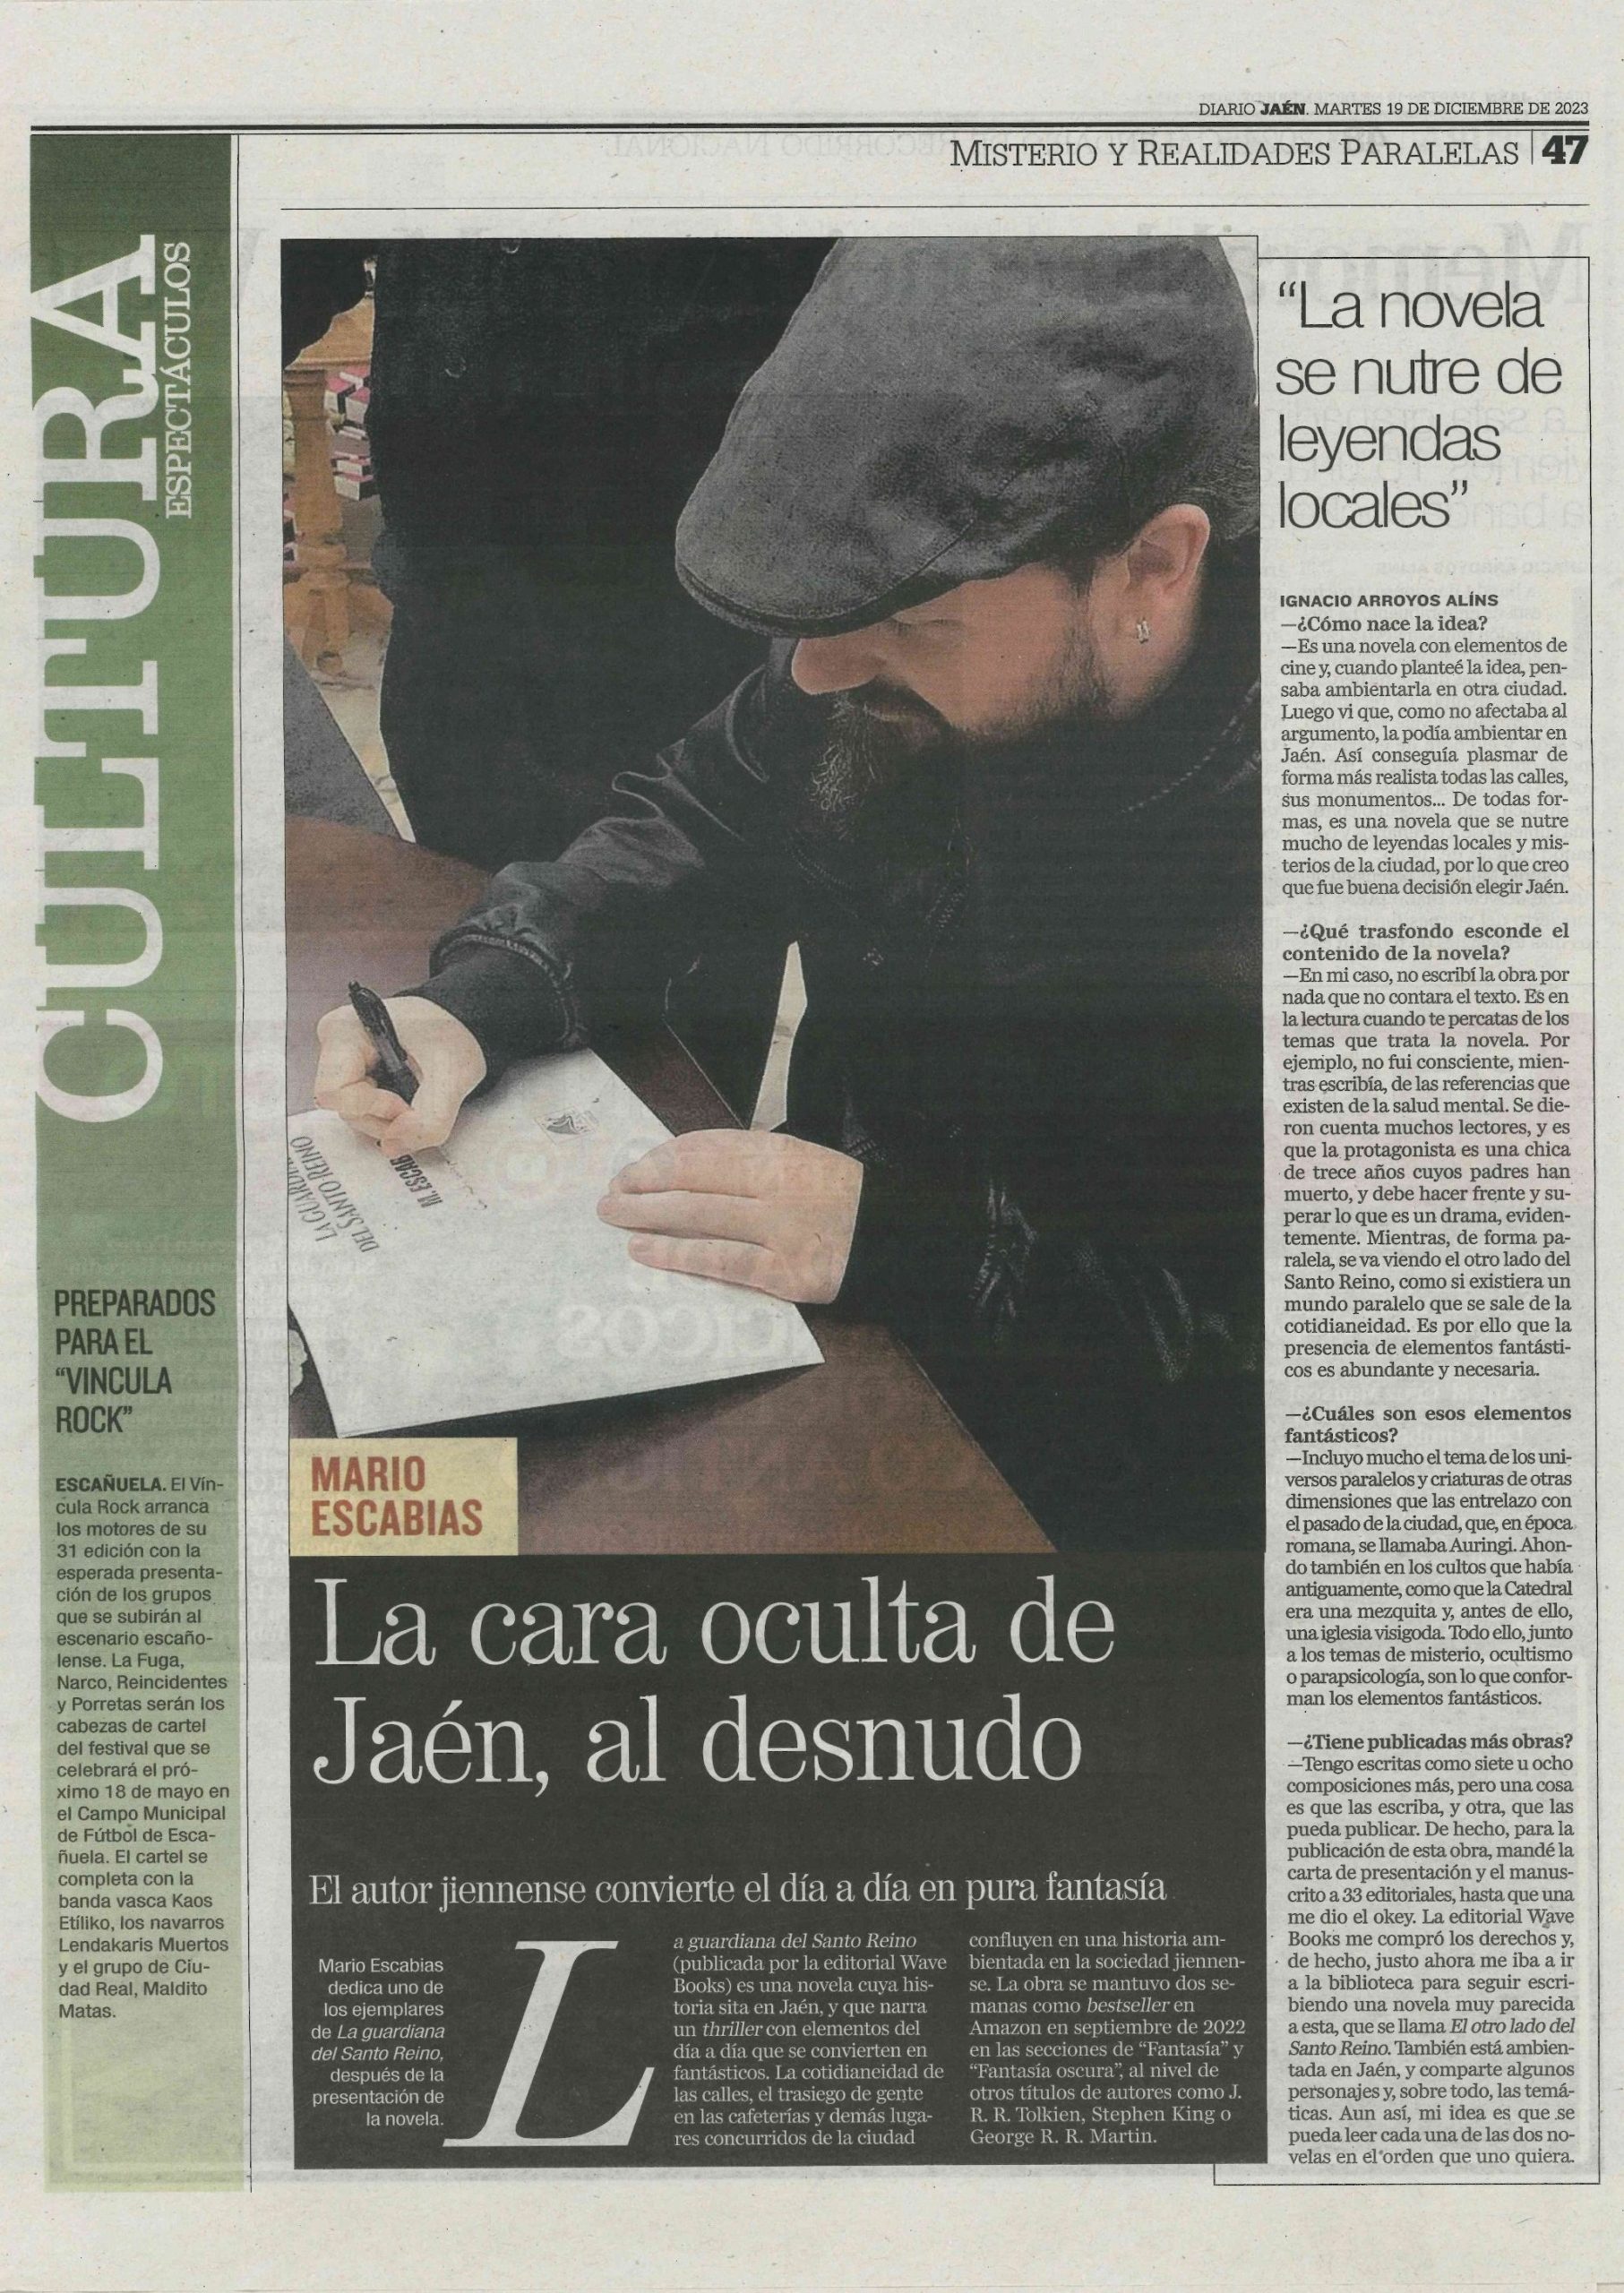 Entrevista al escritor M. Escabias en el Diario Jaén sobre su novela La guardiana del Santo Reino.